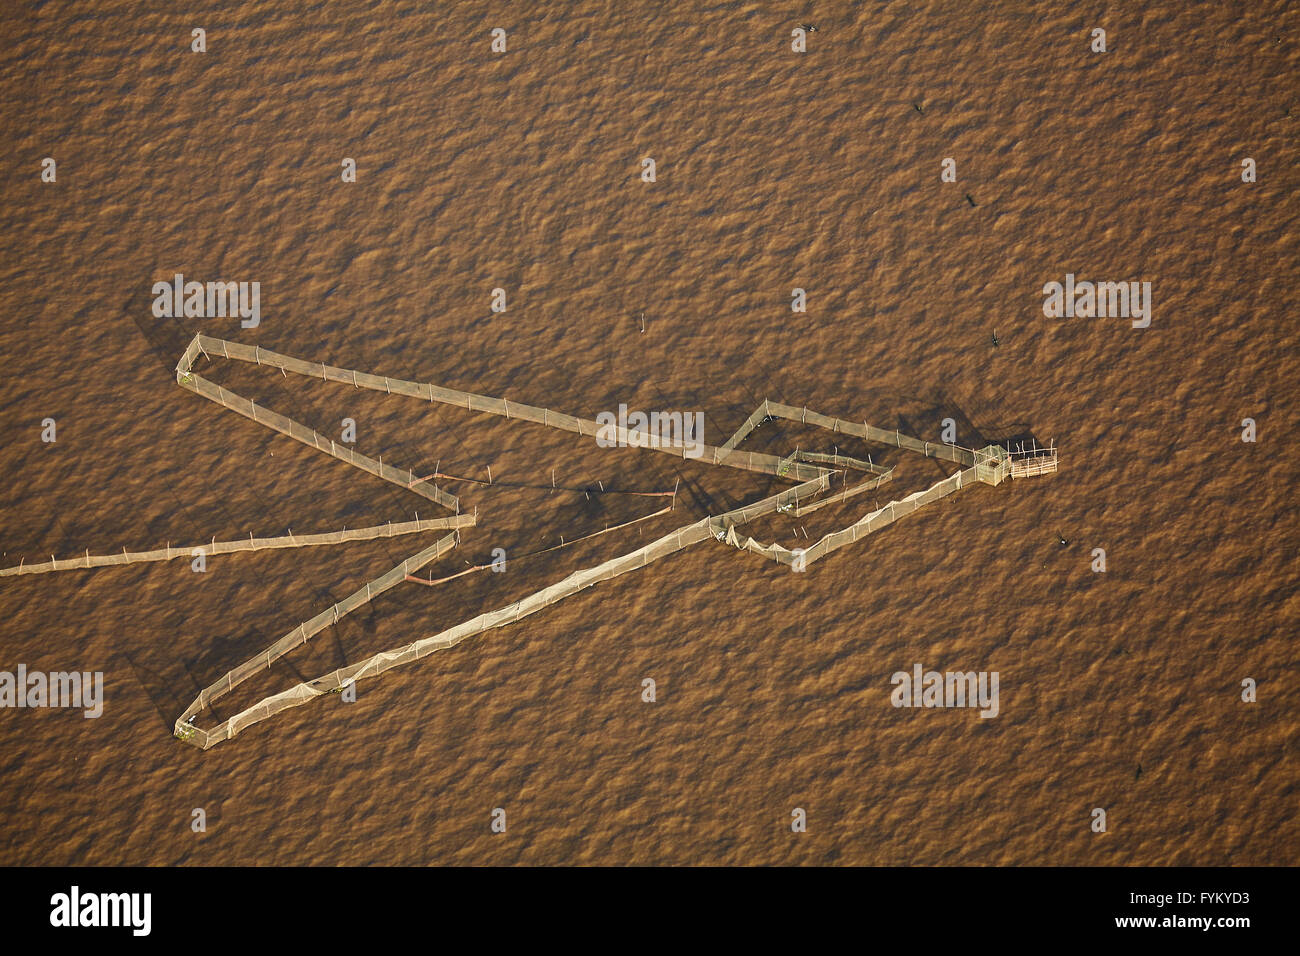 Les filets de pêche, Chong Khneas village flottant, lac Tonlé Sap, près de Siem Reap, Cambodge - vue aérienne Banque D'Images